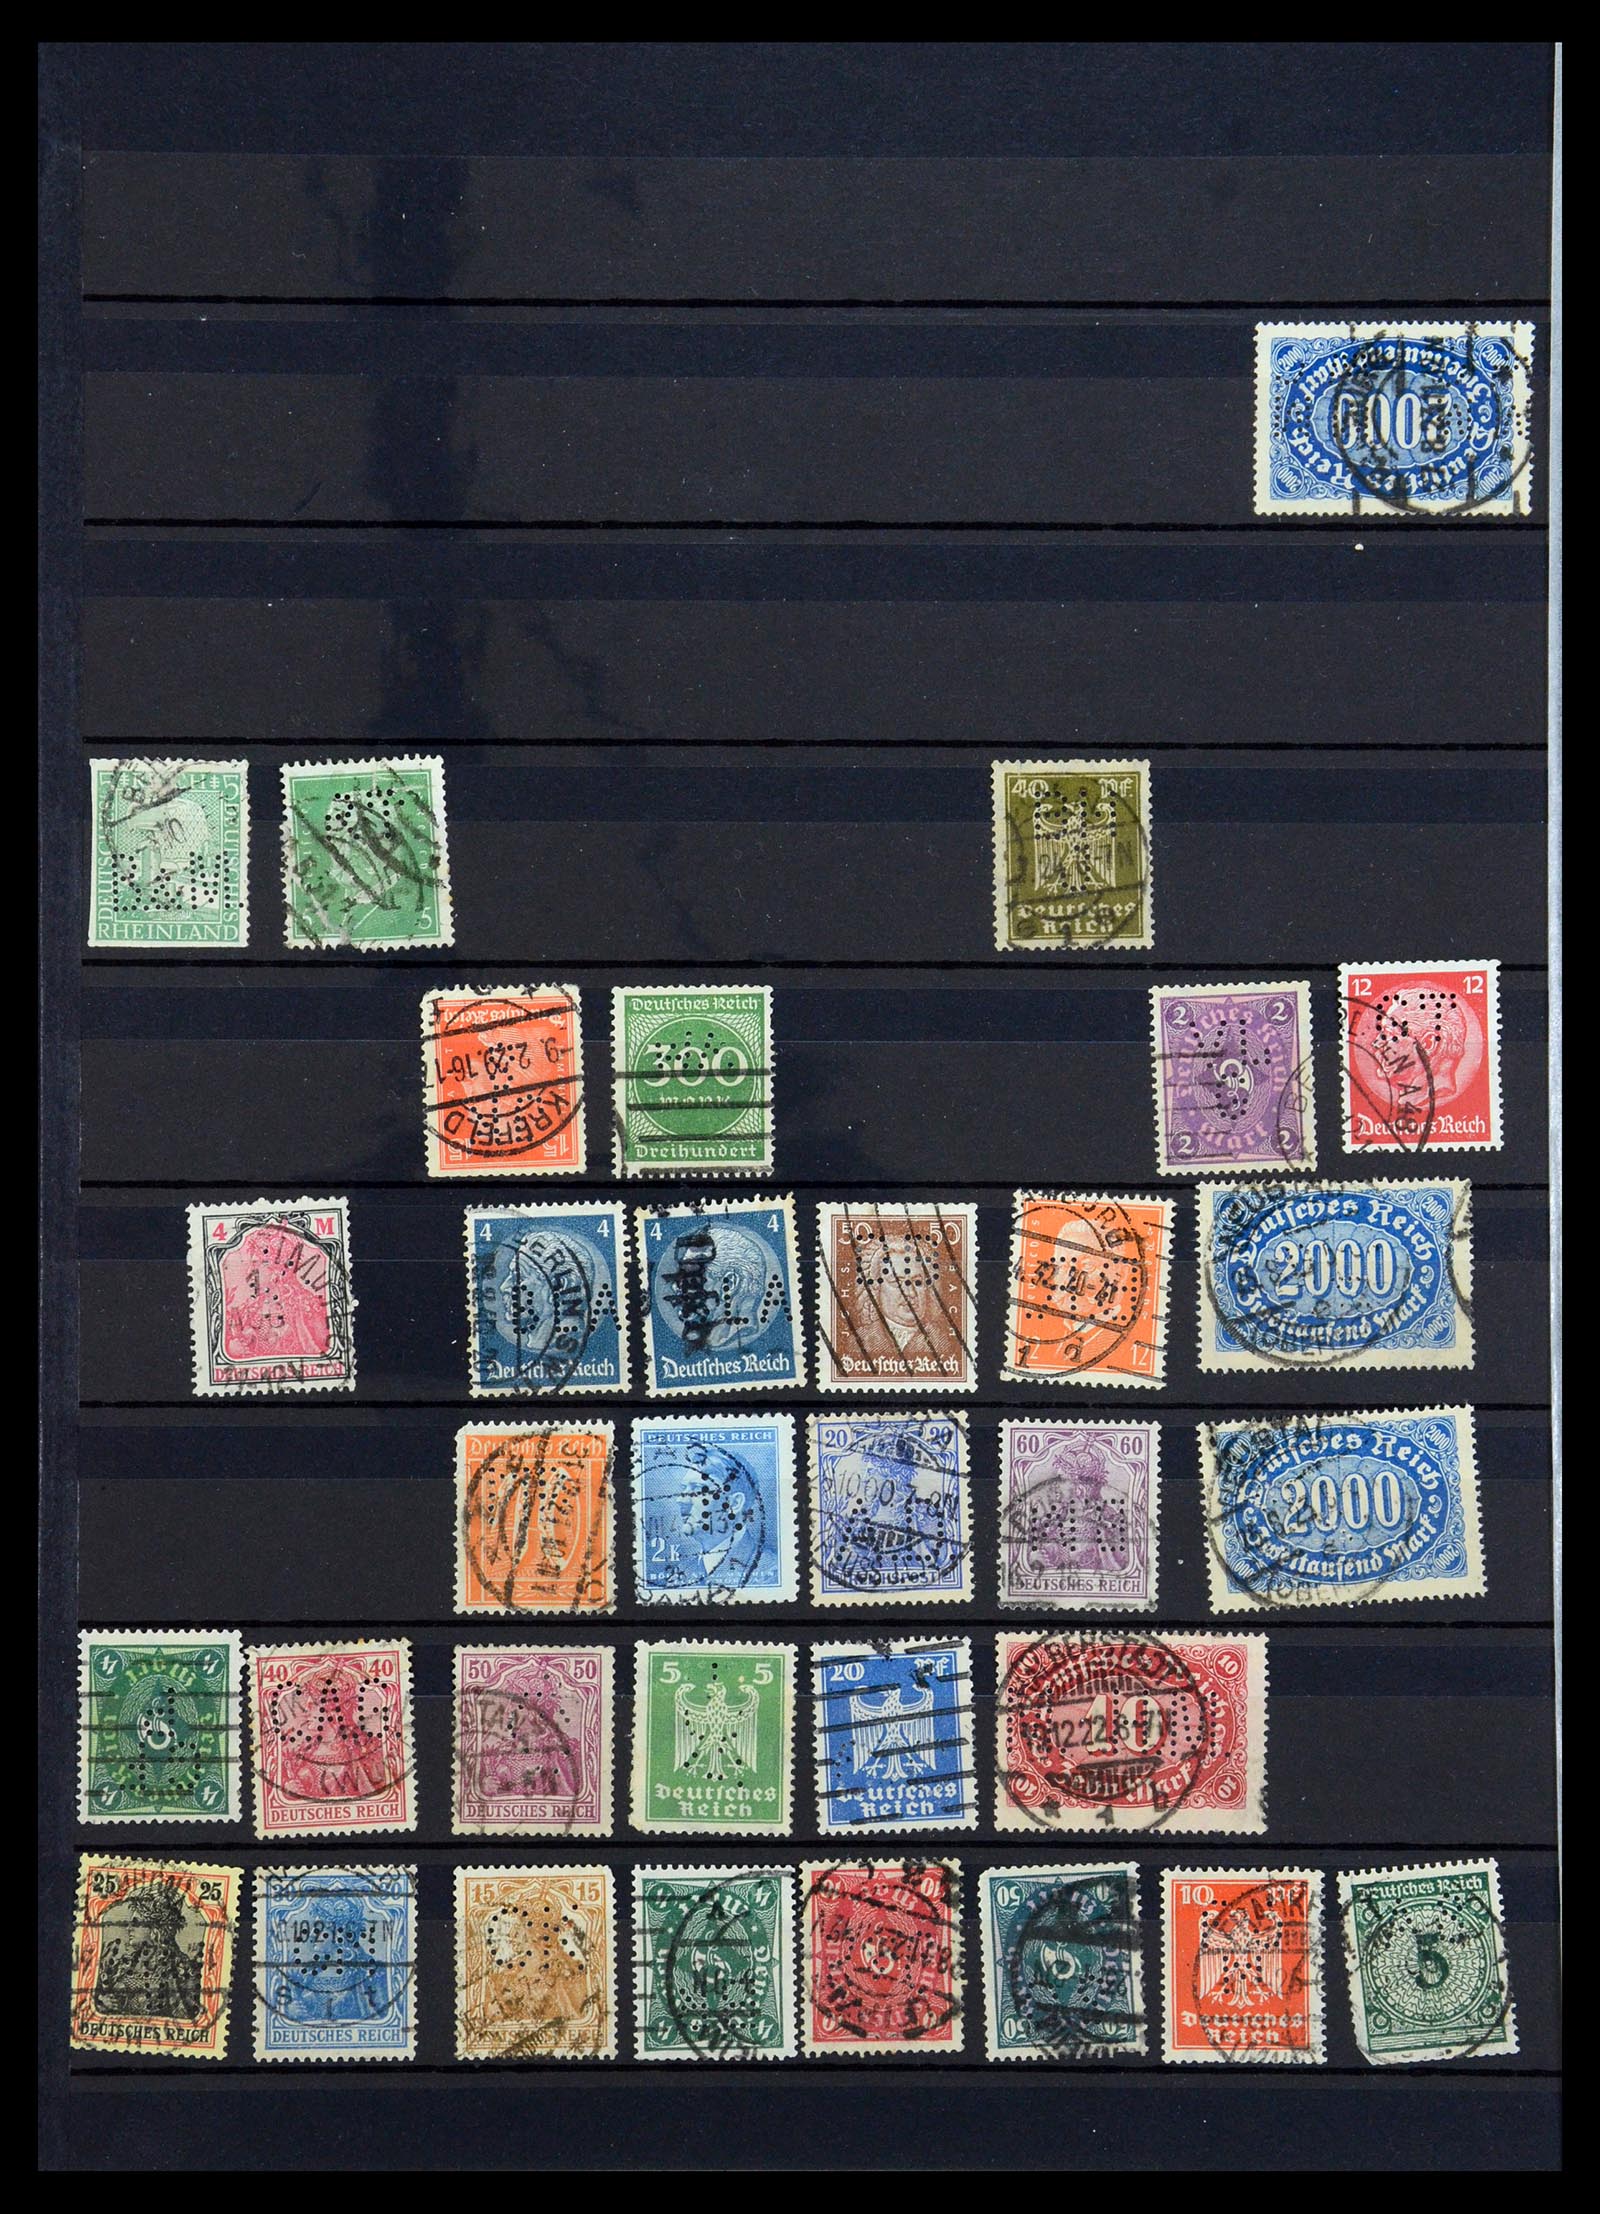 35183 034 - Stamp Collection 35183 German Reich perfins 1880-1945.